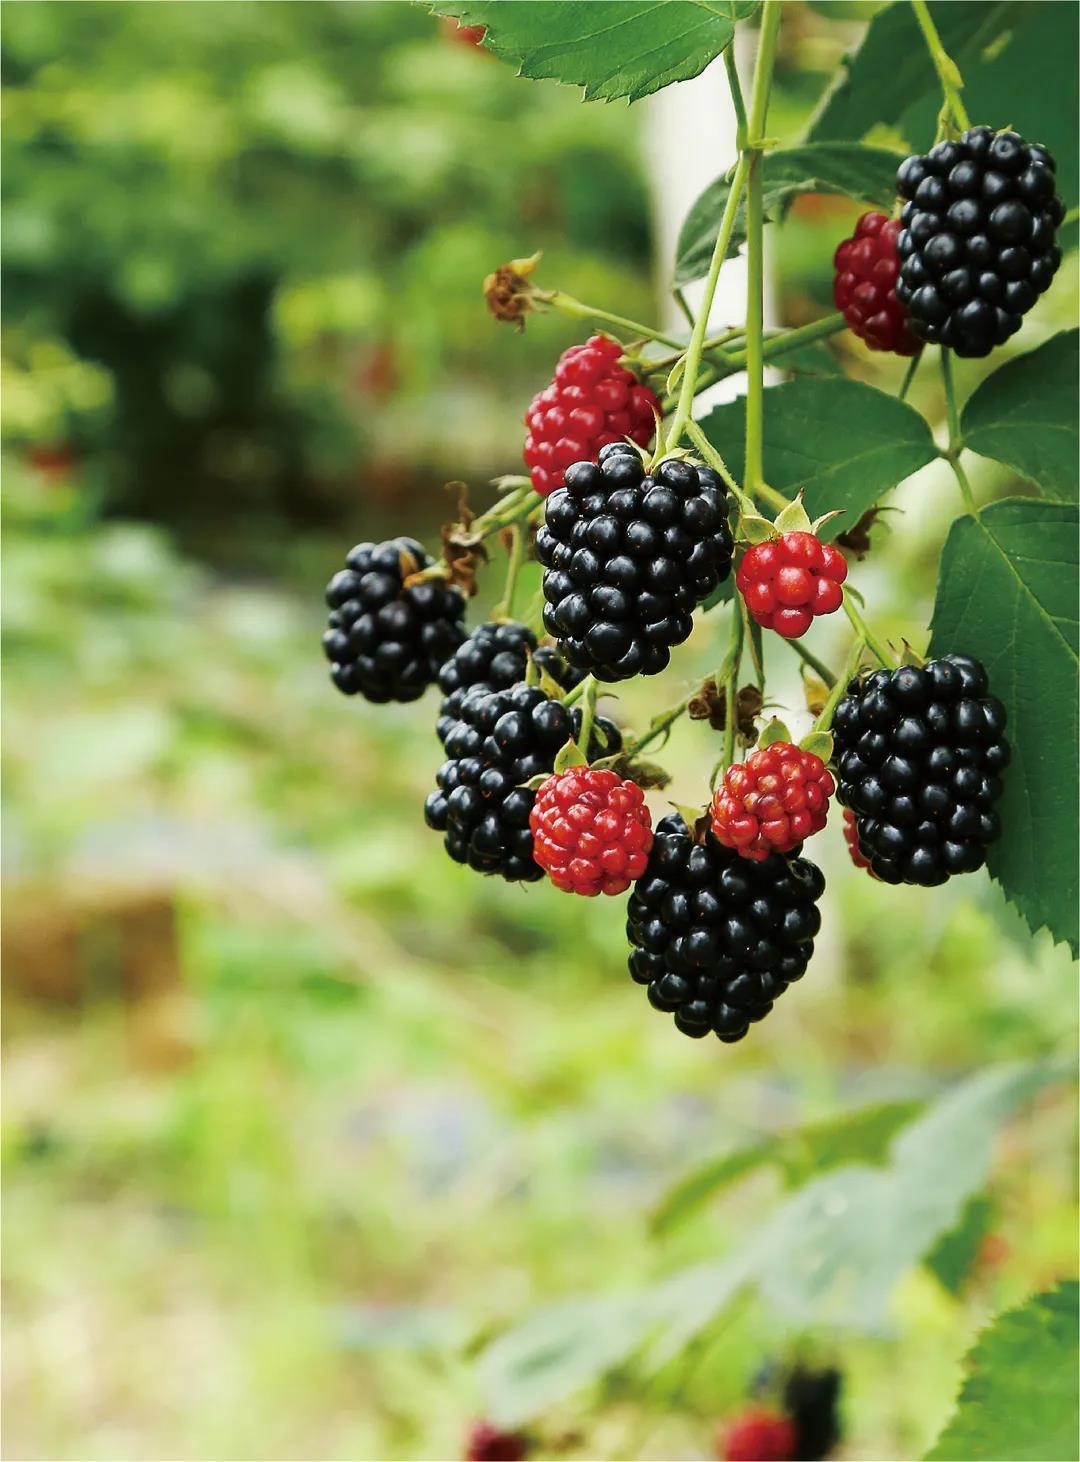 今天推荐南京的另外一款非常好吃的水果:白马黑莓,江苏省南京市洚水